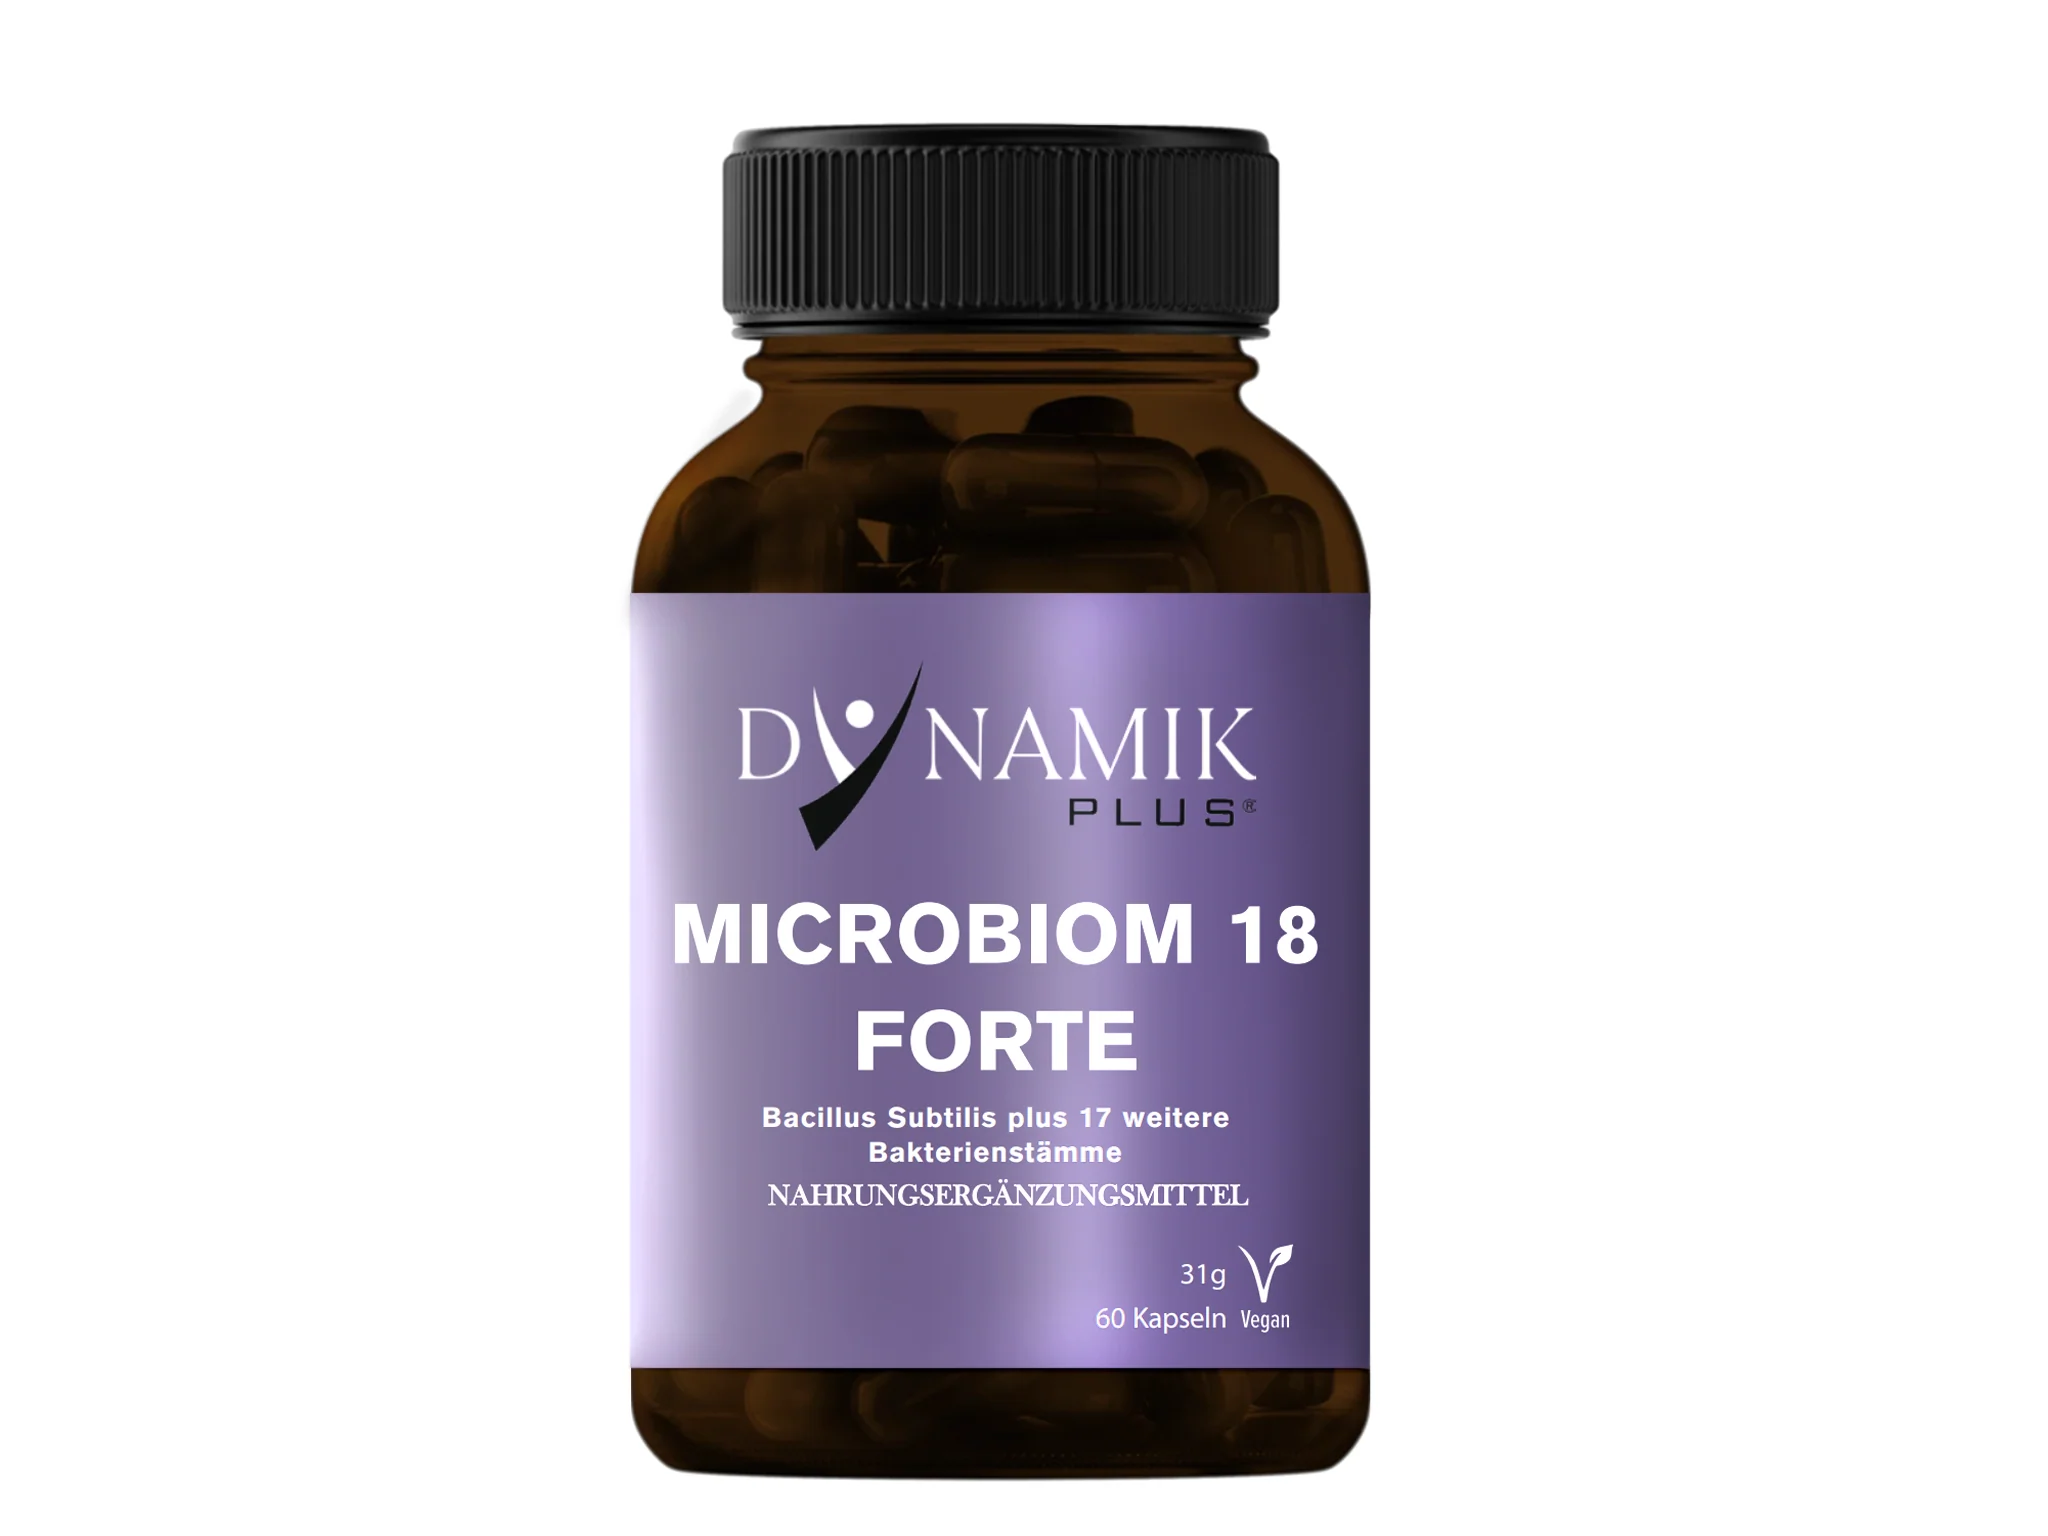 Microbiom 18